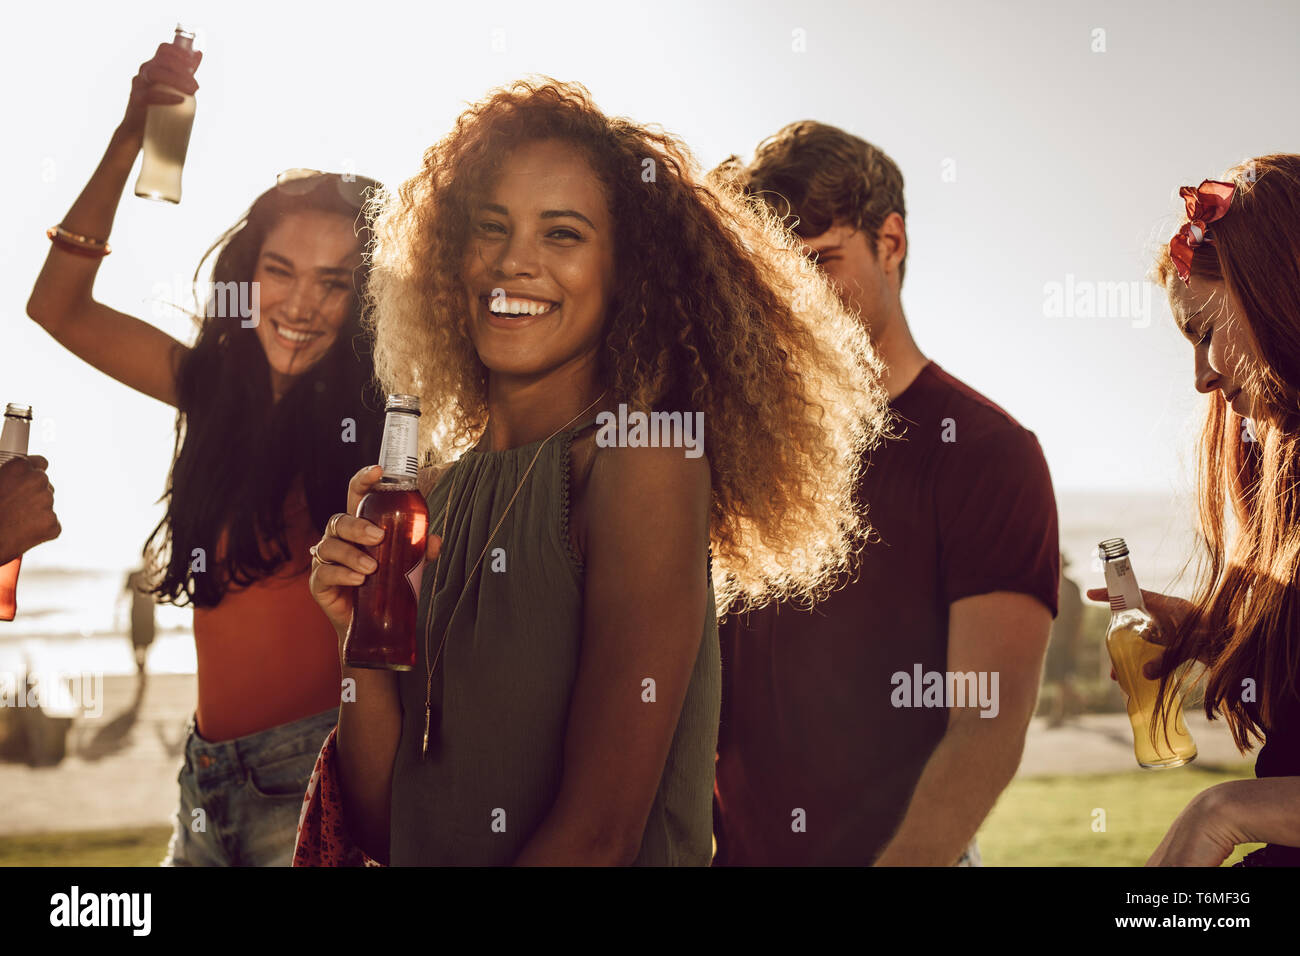 Allegro giovane donna tenendo la birra ballando con i suoi amici all'esterno. Femmina godendo le vacanze estive con gli amici. Foto Stock